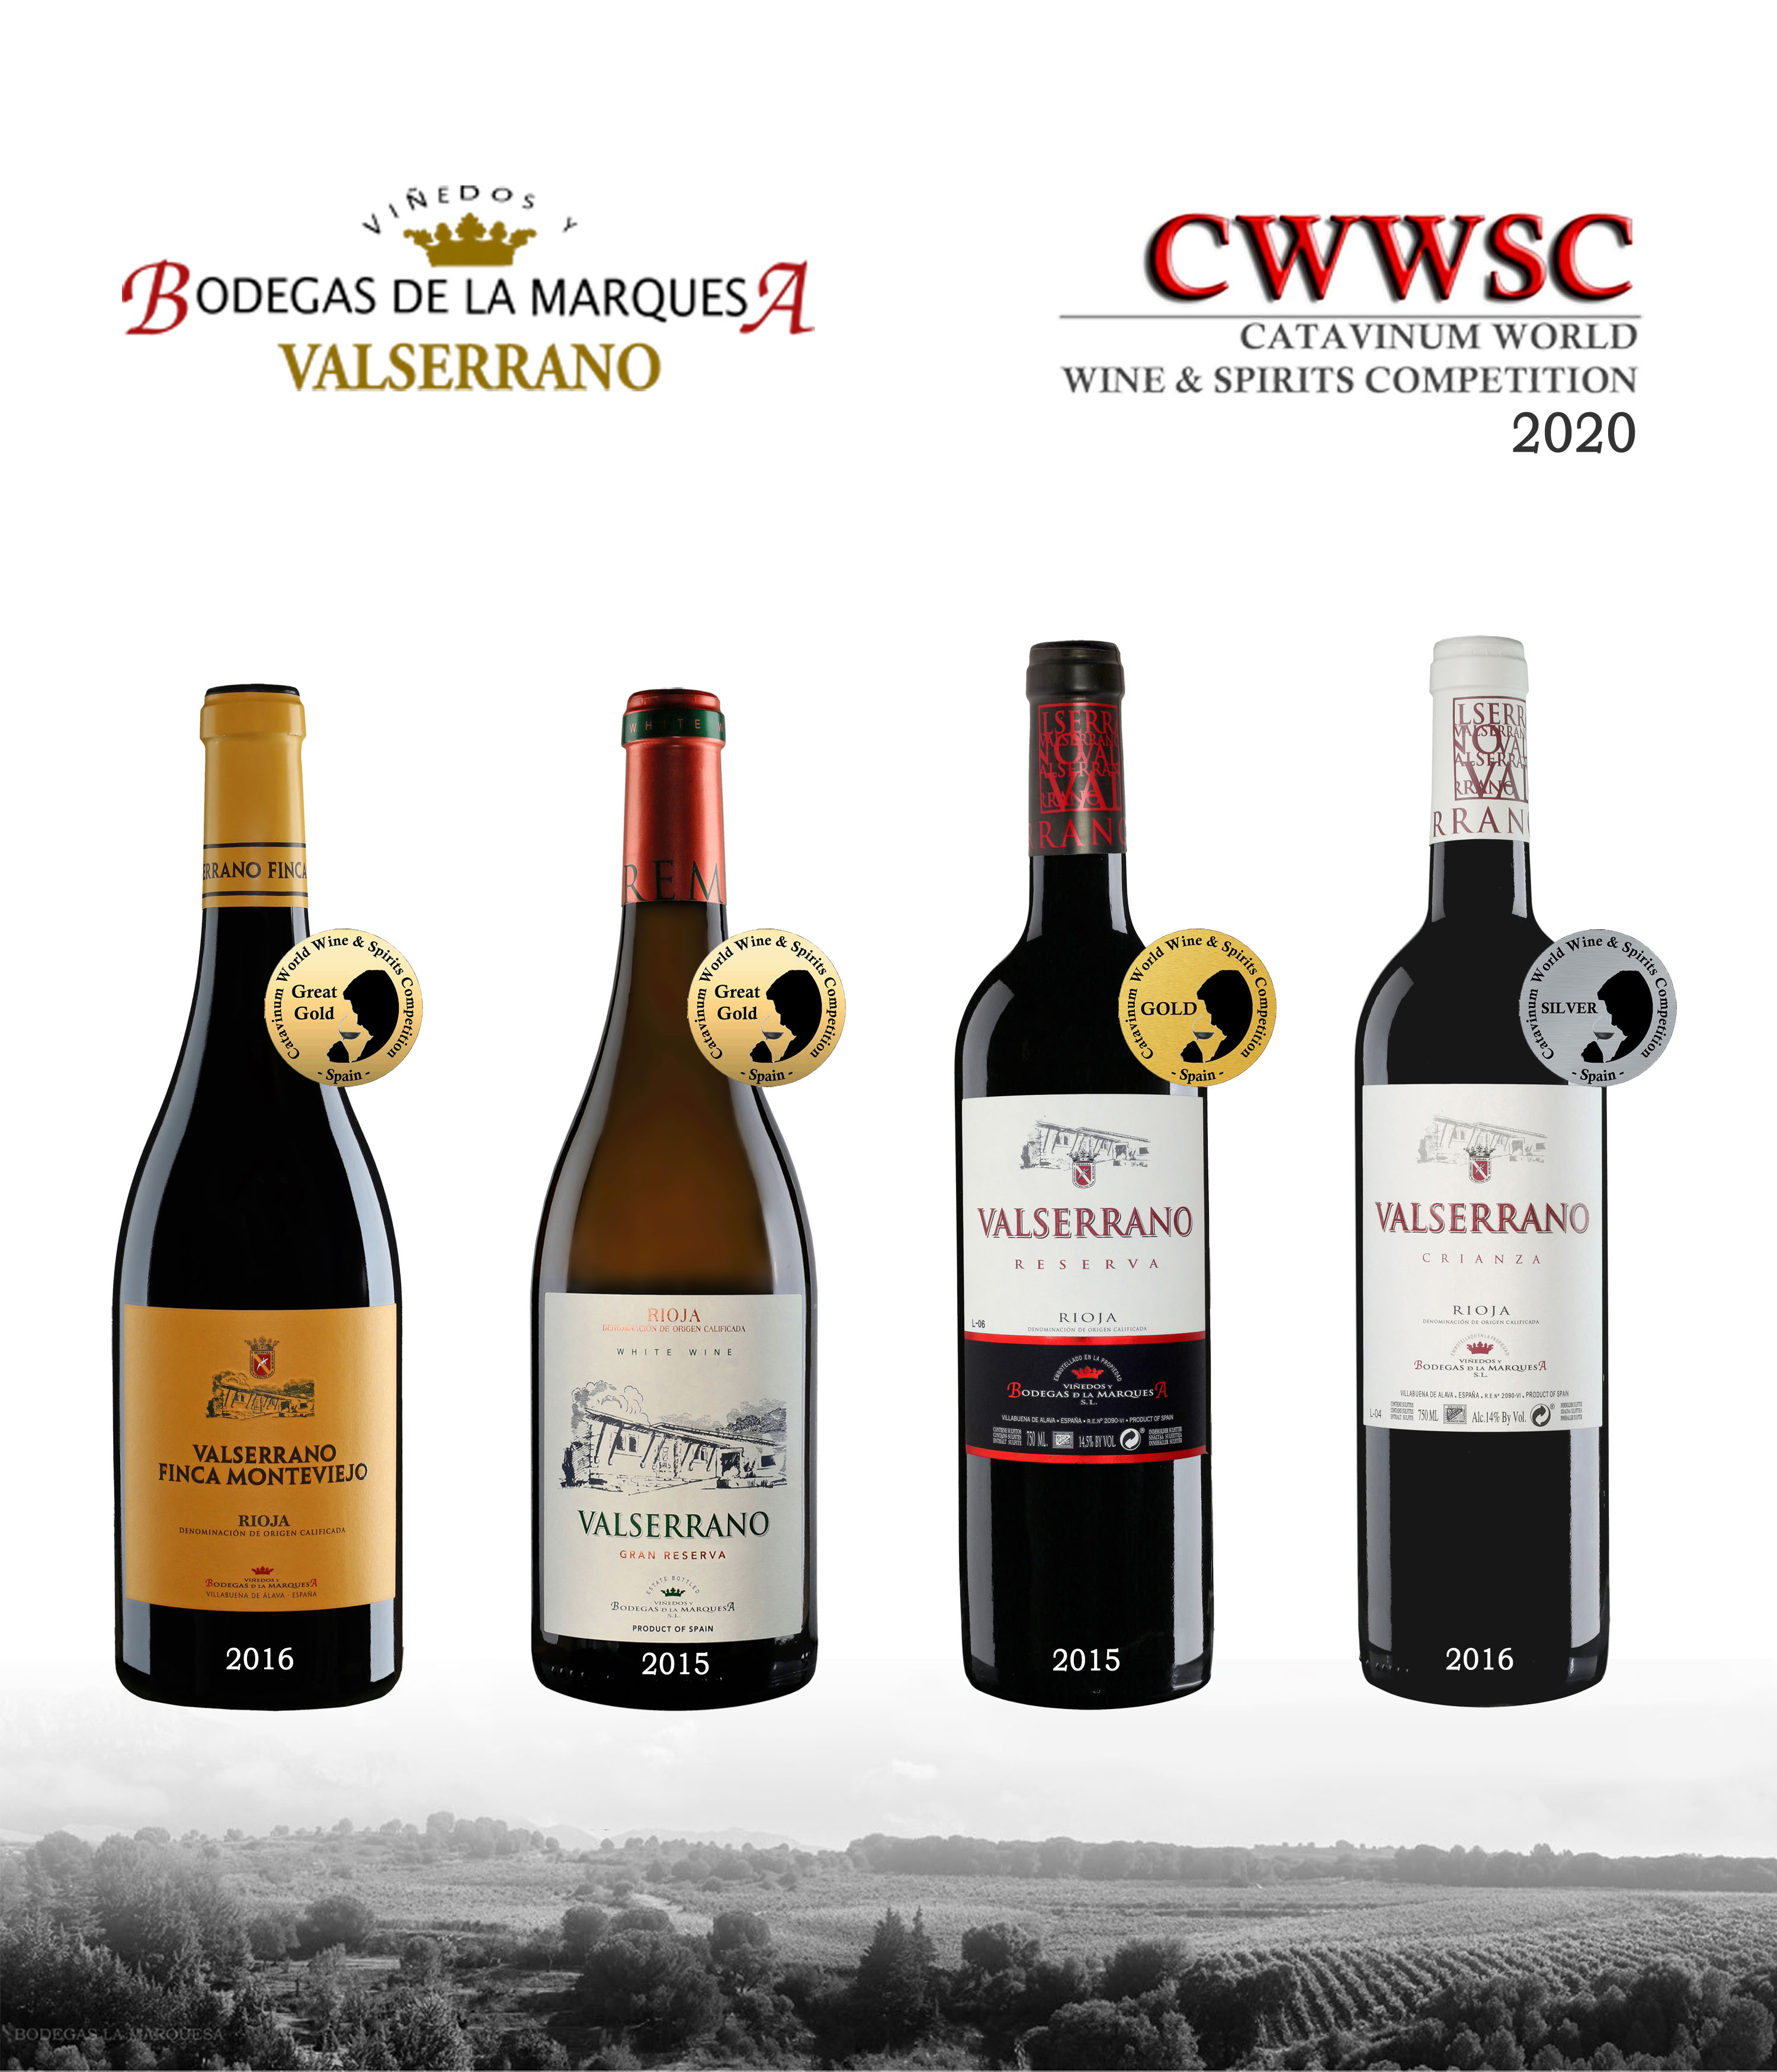 cuatro vinos premiados en Catavinum 2020